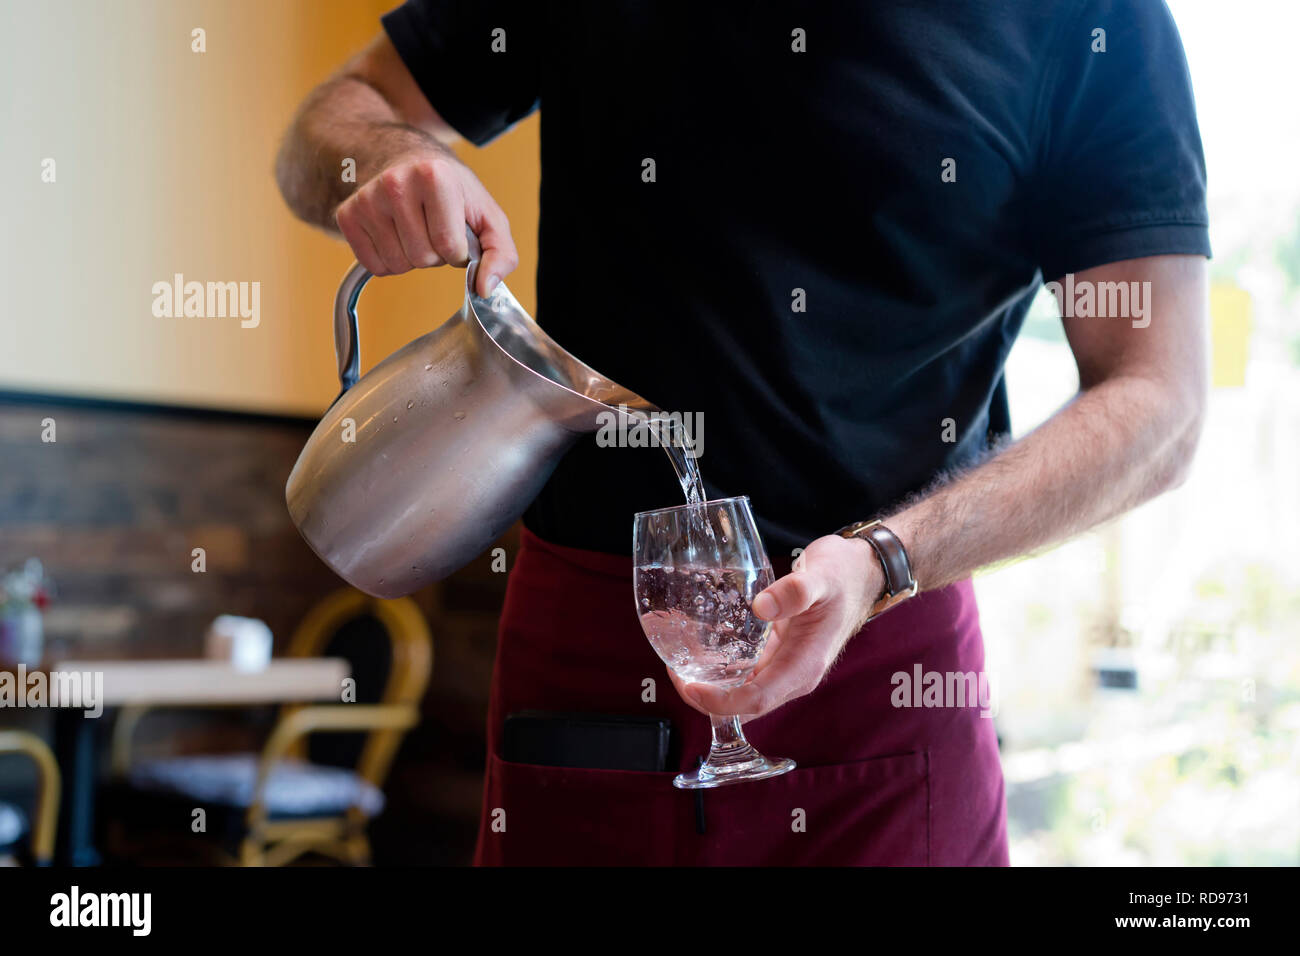 Strong Slim Man mit muskulösen Muskeln arbeiten als Kellner in einem Restaurant in einem schwarzen T-Shirt und Burgund Schürze gießt Wasser aus einem Krug aus rostfreiem Stahl Stockfoto